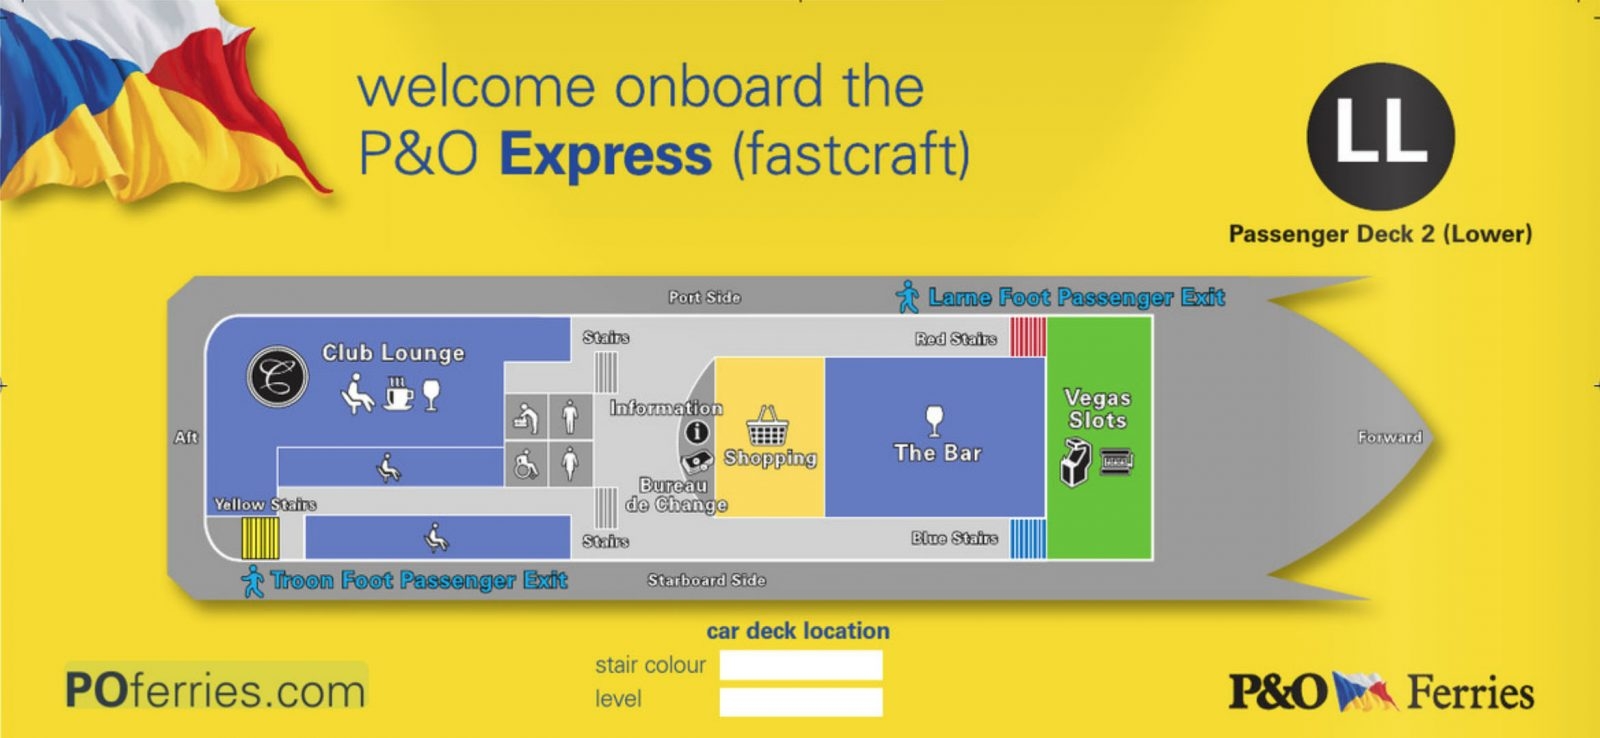 P&O EXPRESS lower passenger deck (deck 2) deck plan. P&O Ferries